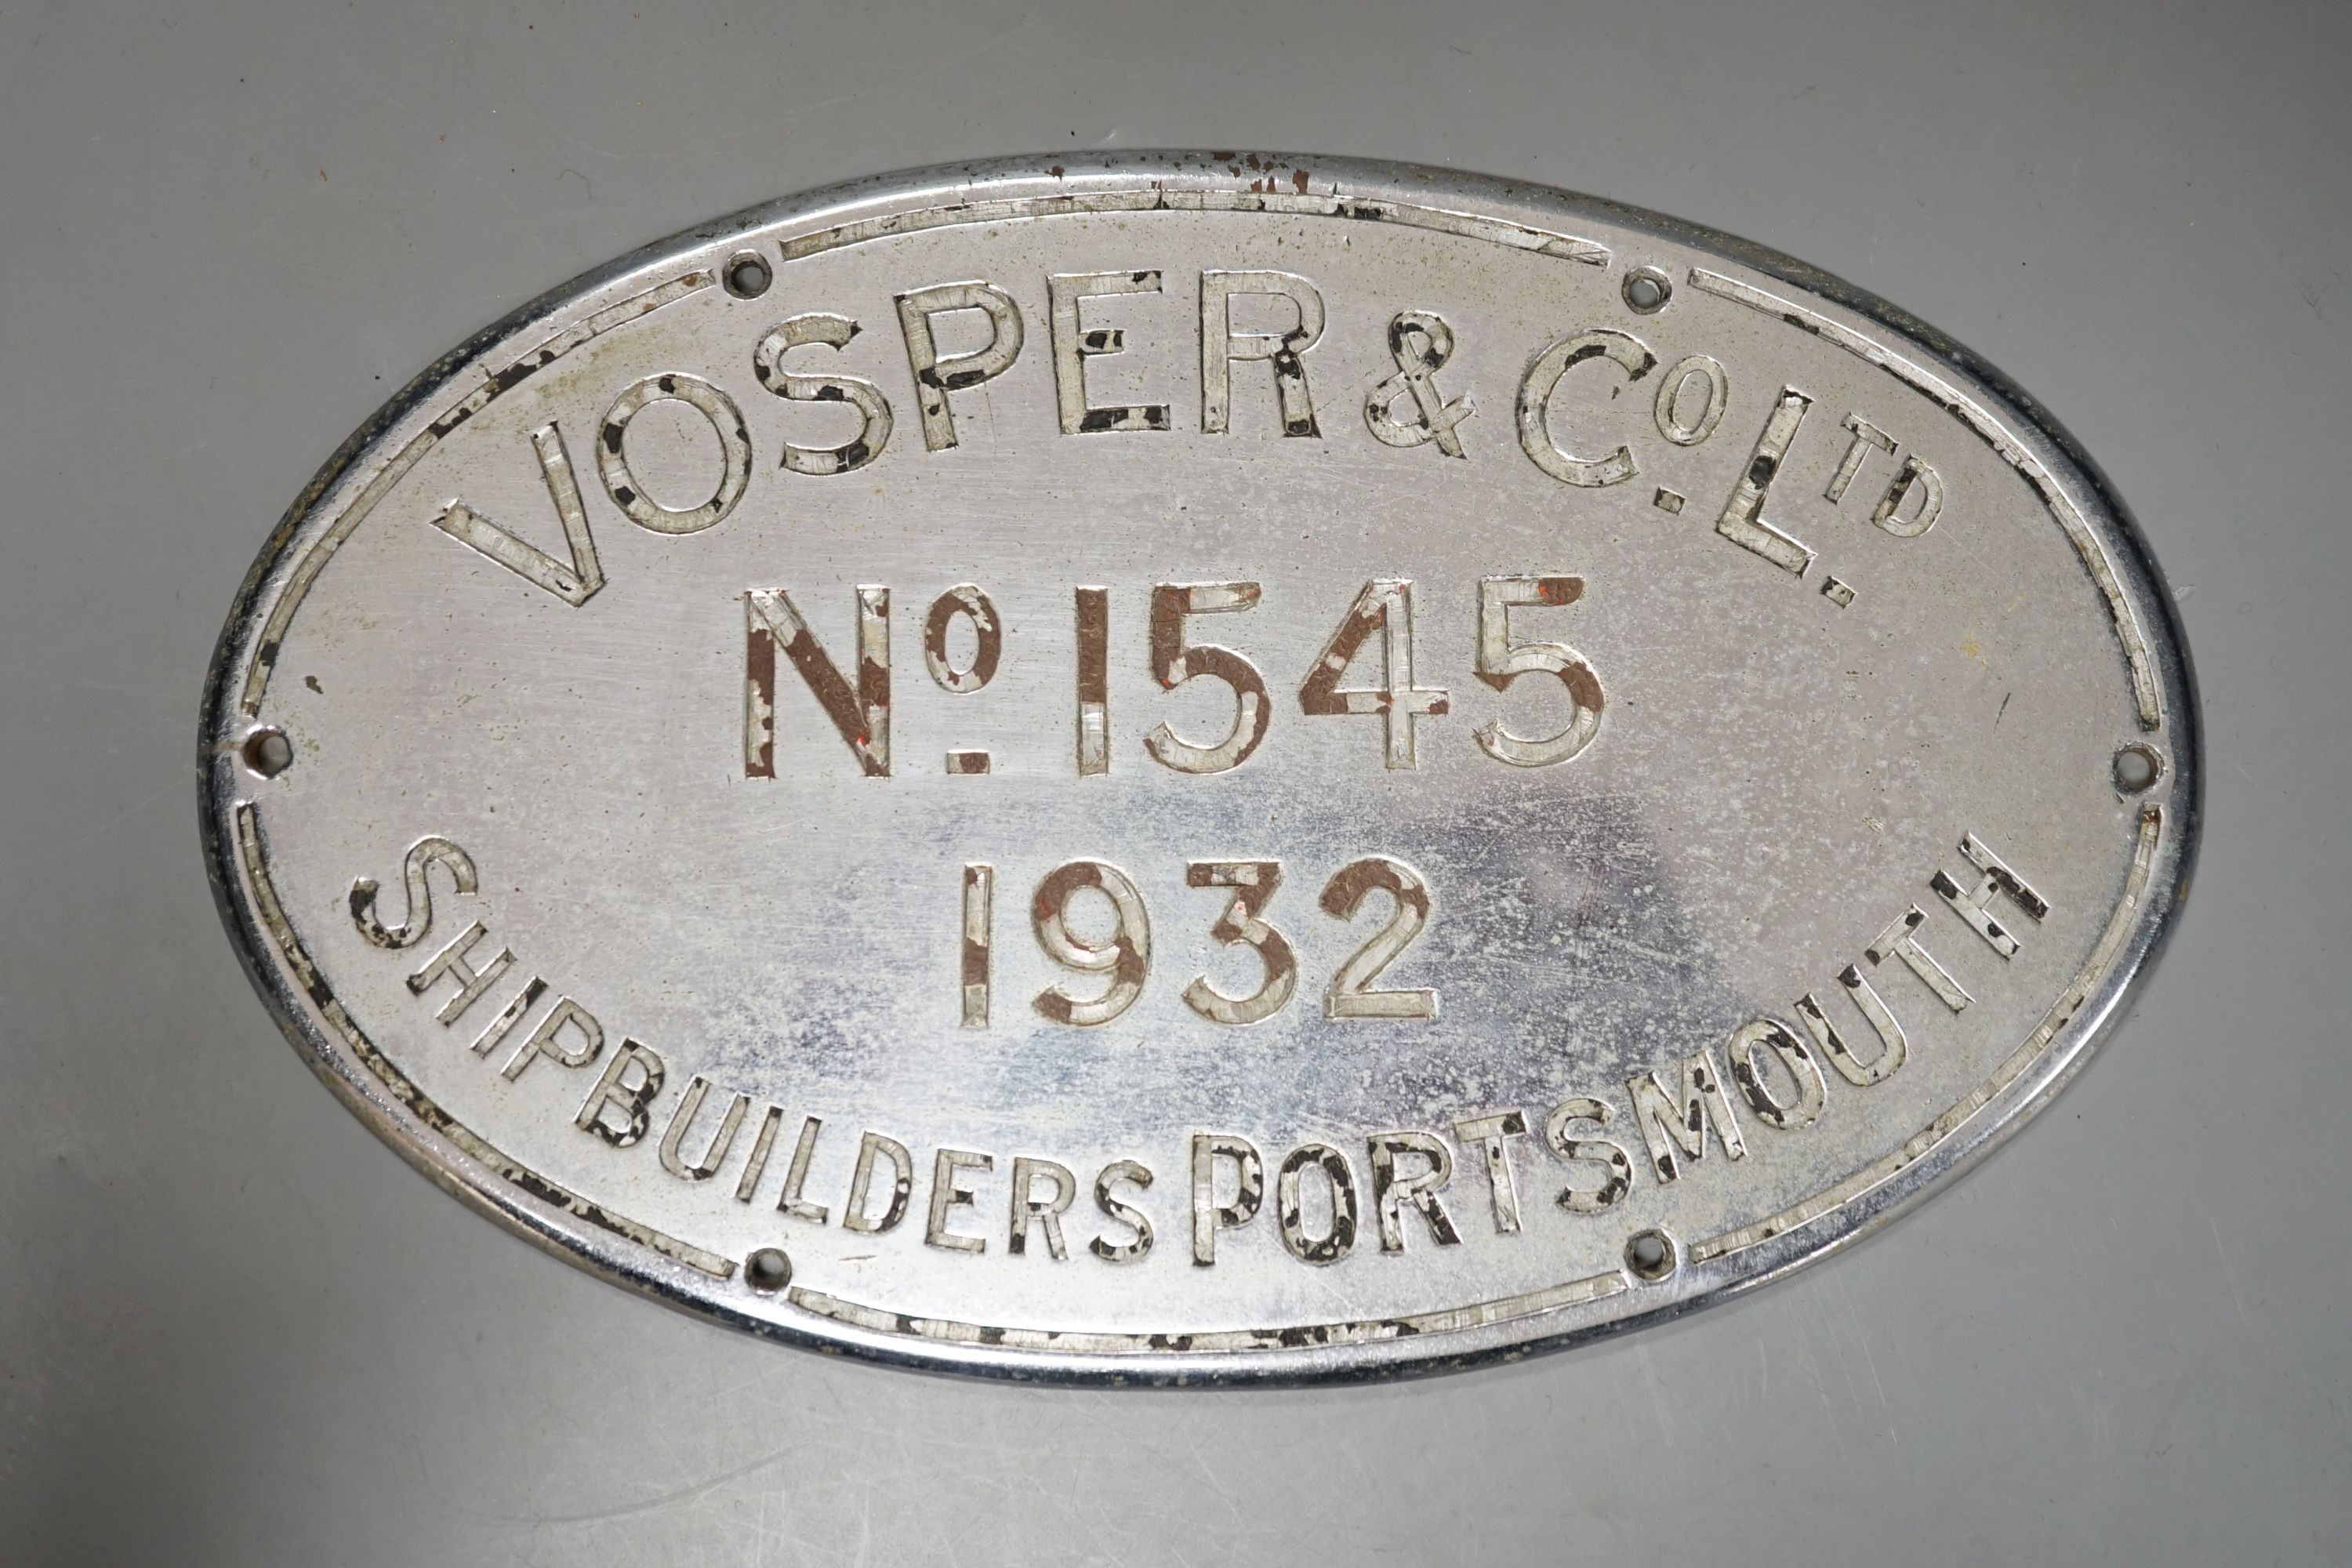 A Vosper & Co. Ltd. Oval shipbuilders chrome plaque, 1932, 21cm.